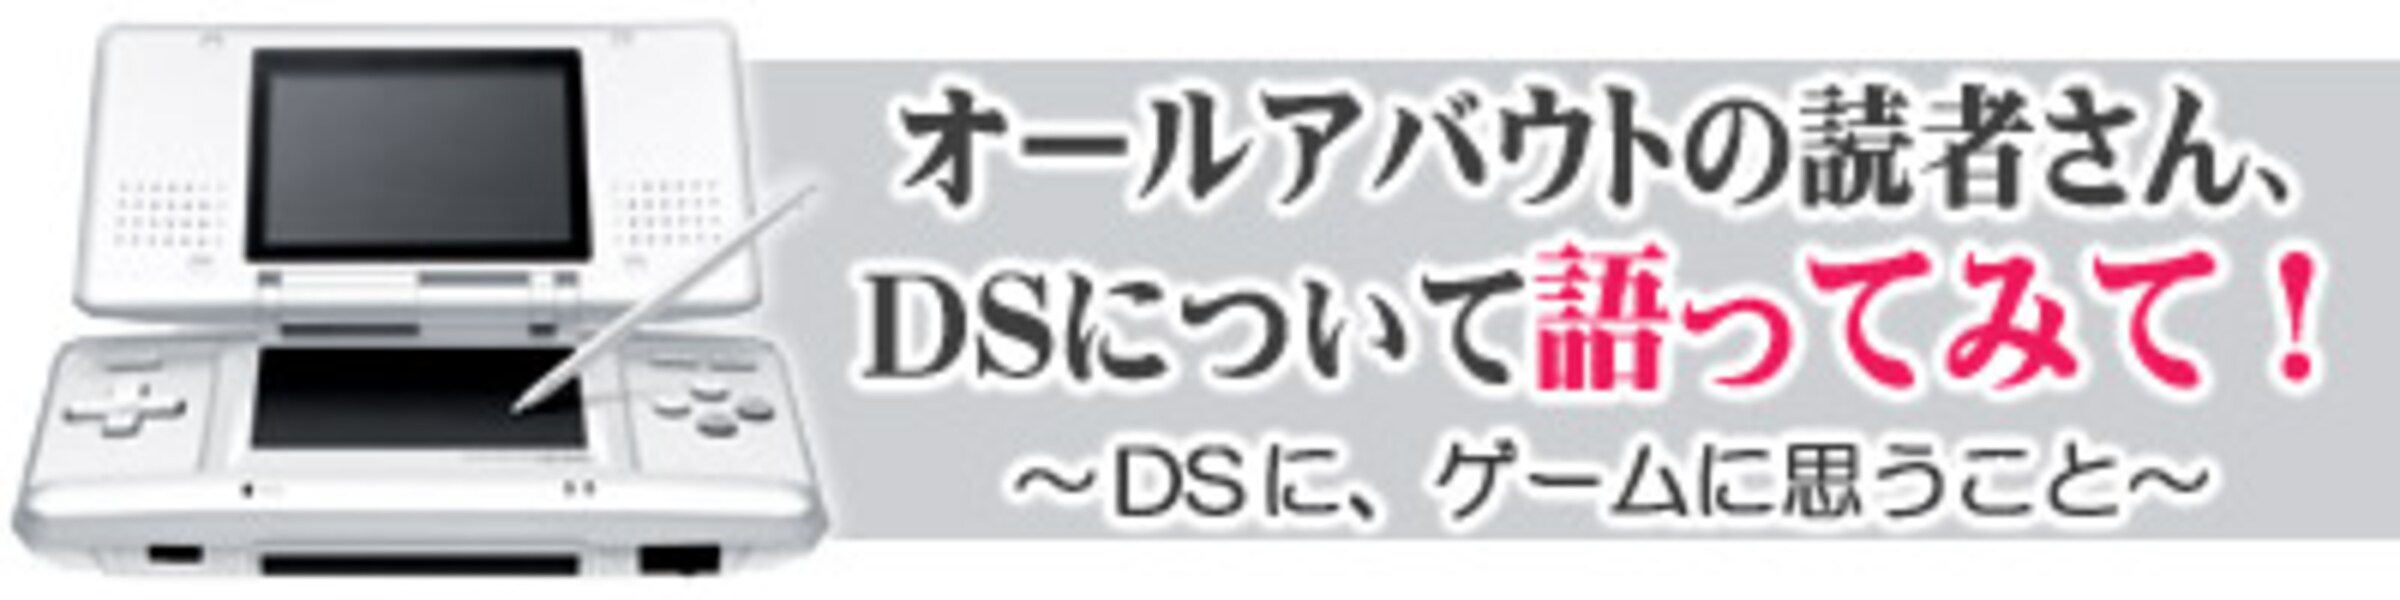 2/3 “遊び手”が語るニンテンドーDS [ニンテンドーDS・3DS] All About